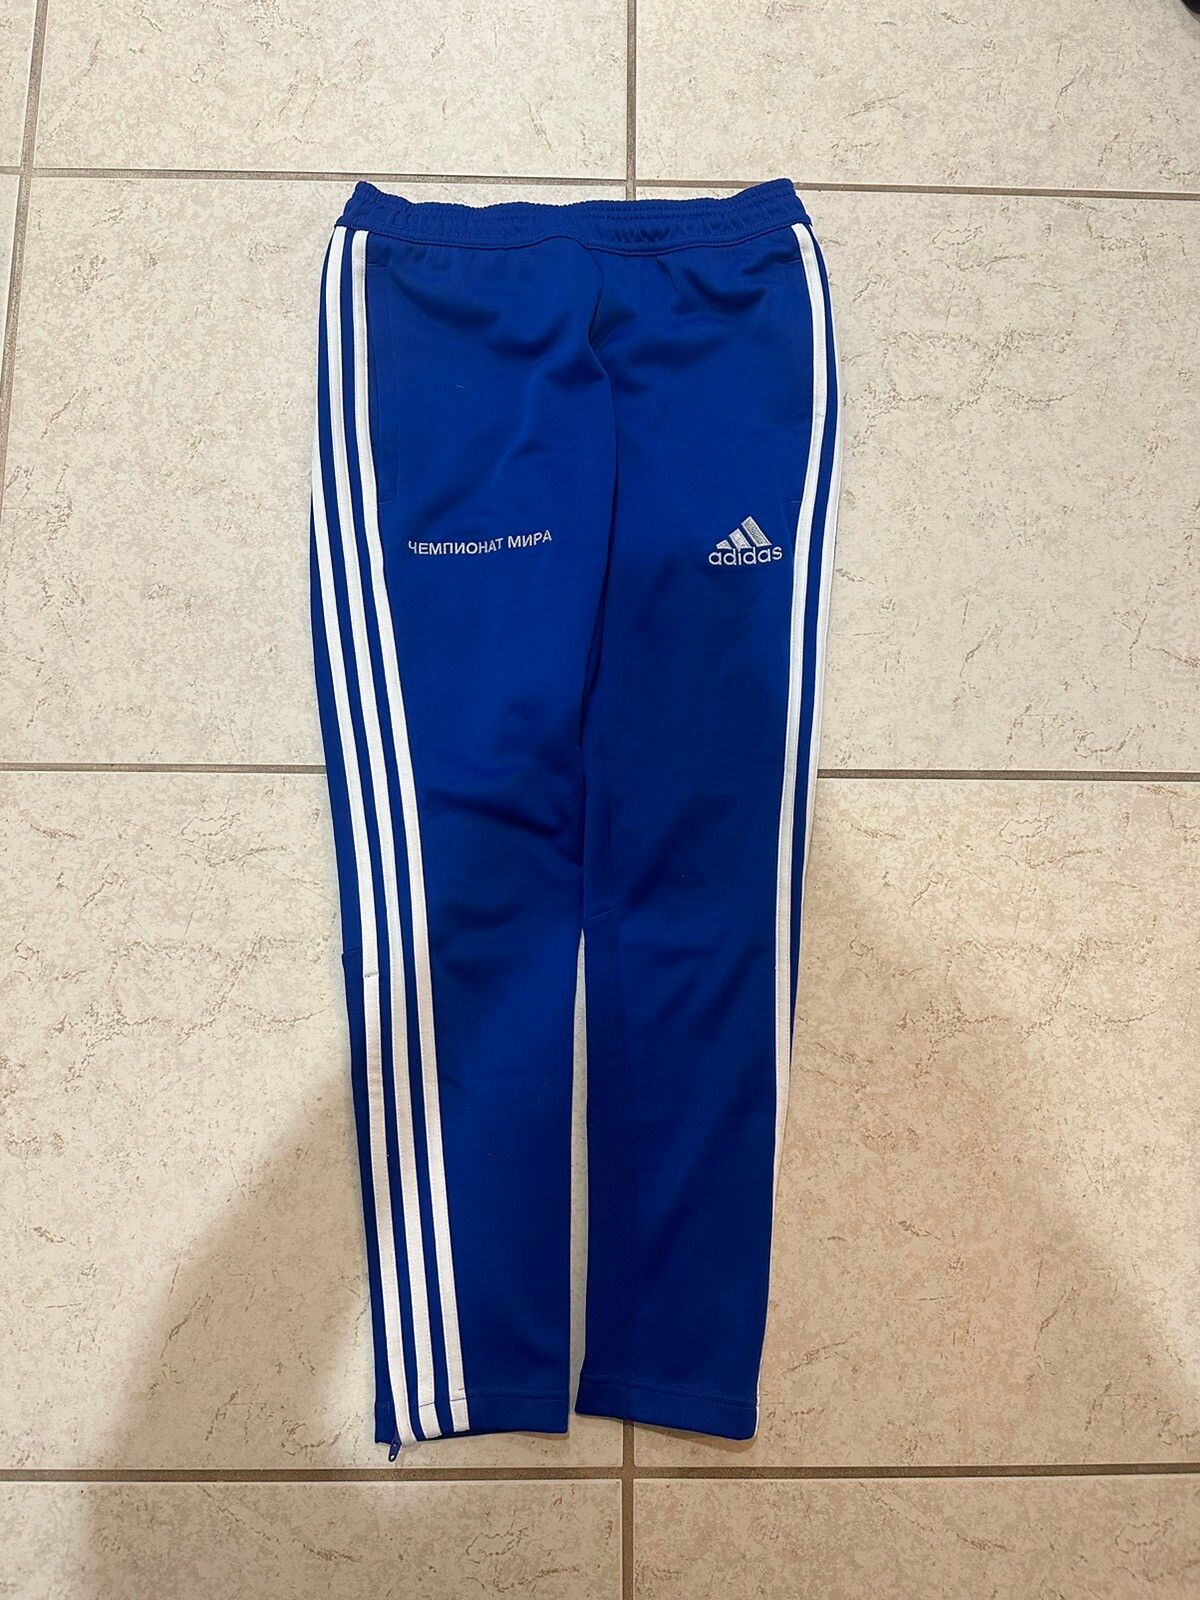 image of Gosha Rubchinskiy 2018 Blue Adidas Trackpants, Men's (Size 30)